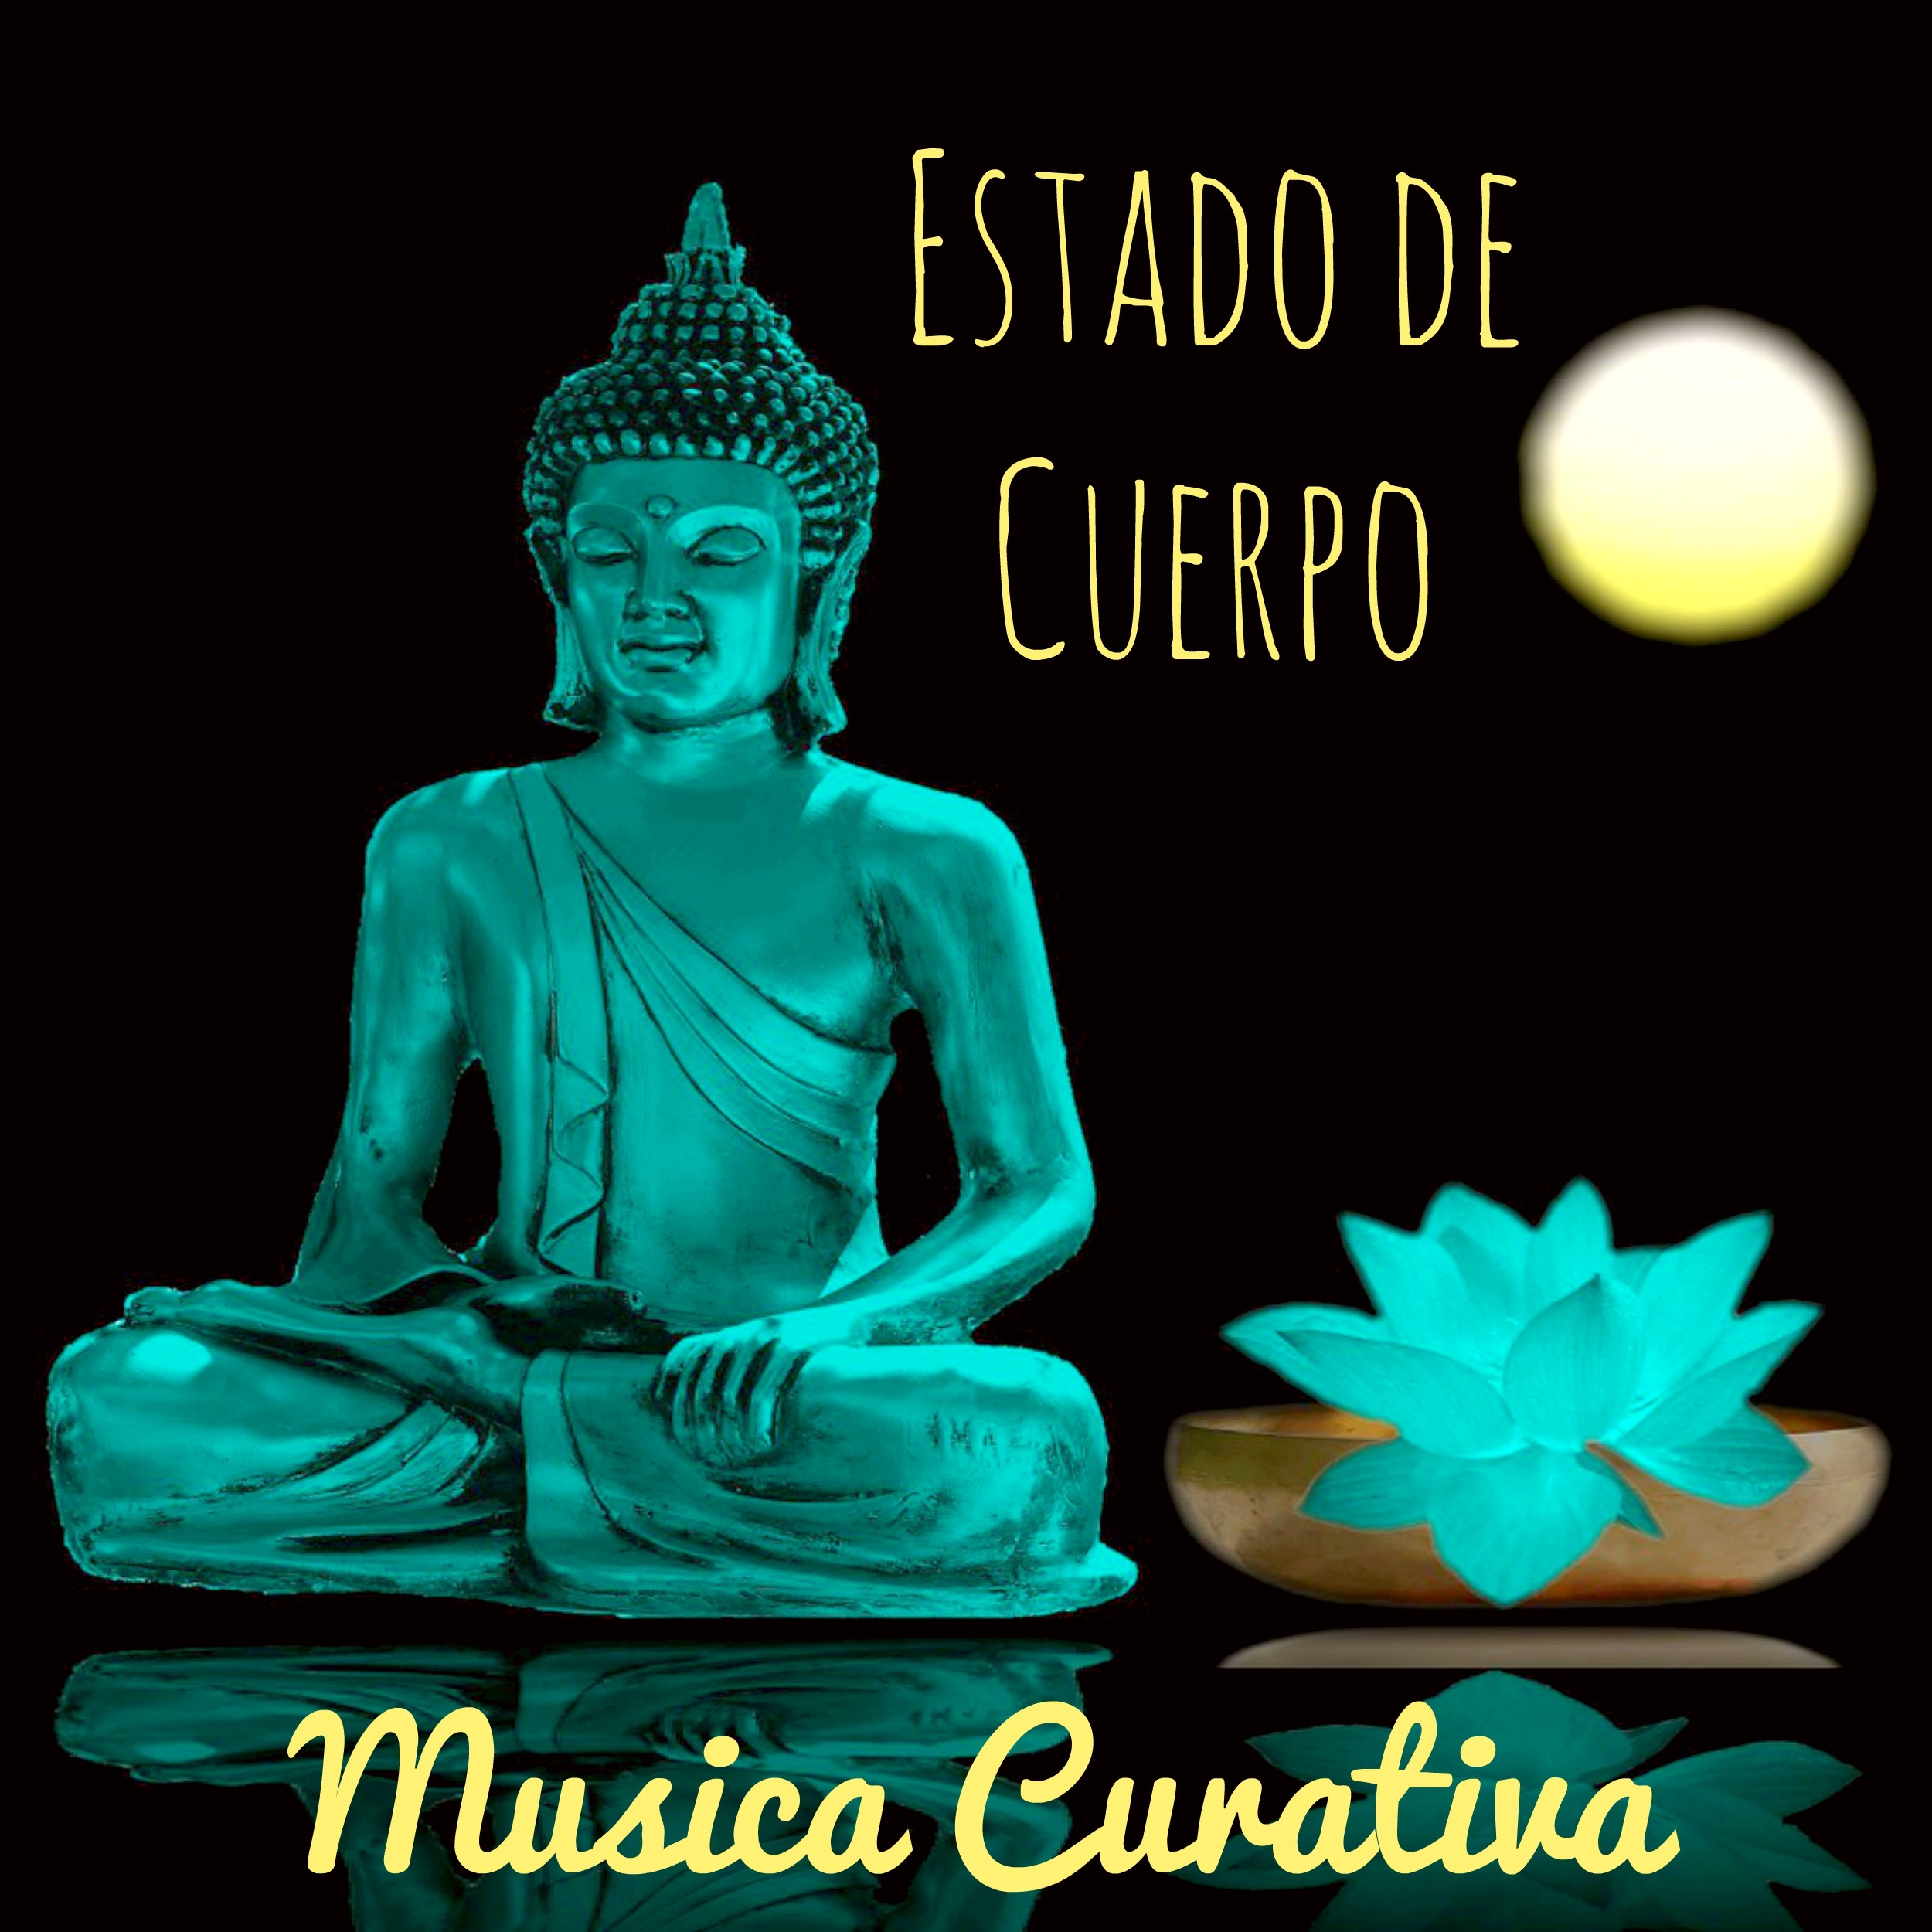 Estado de Cuerpo - Musica Curativa para Abrir Chakras Mente Brillante con Sonidos Binaurales Naturales